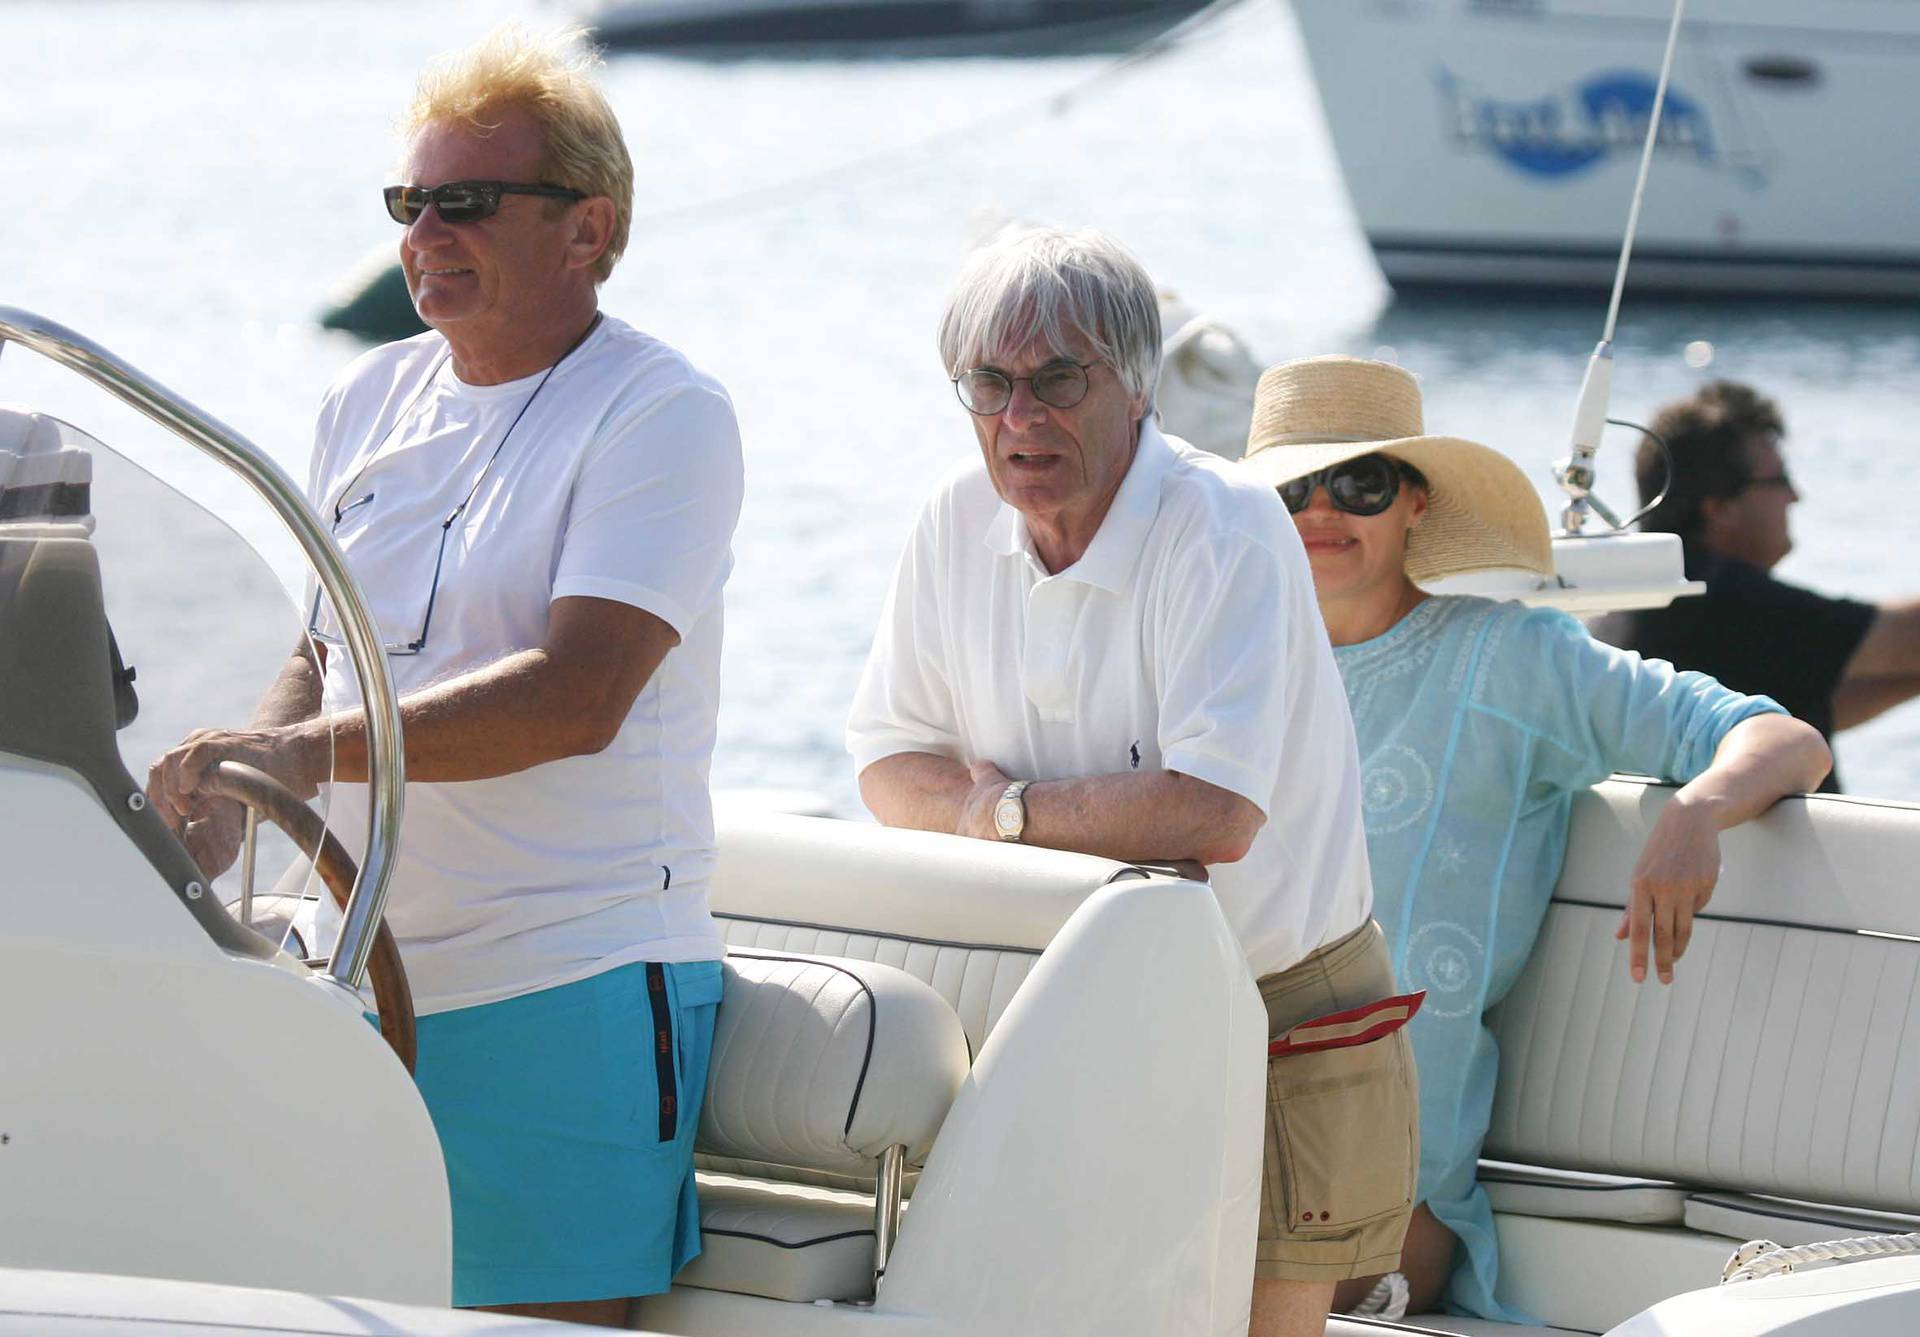 ARHIVA - Hvar: Slavica i Bernie Ecclestone brodom dolaze u restoran Antonio Patak u uvali Ždrilica